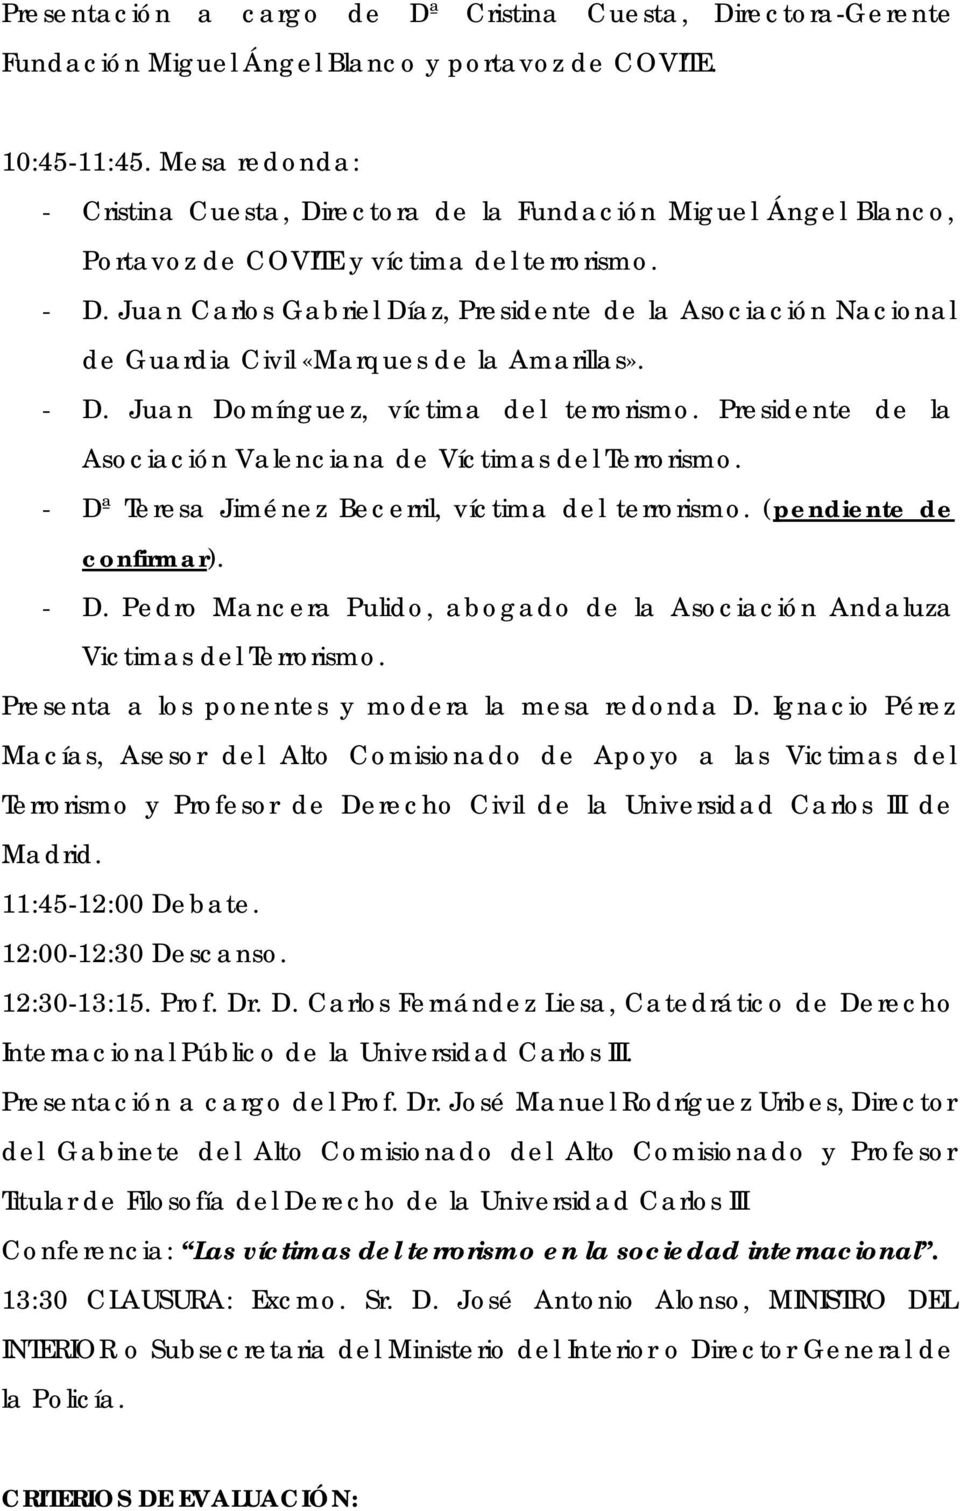 Juan Carlos Gabriel Díaz, Presidente de la Asociación Nacional de Guardia Civil «Marques de la Amarillas». - D. Juan Domínguez, víctima del terrorismo.